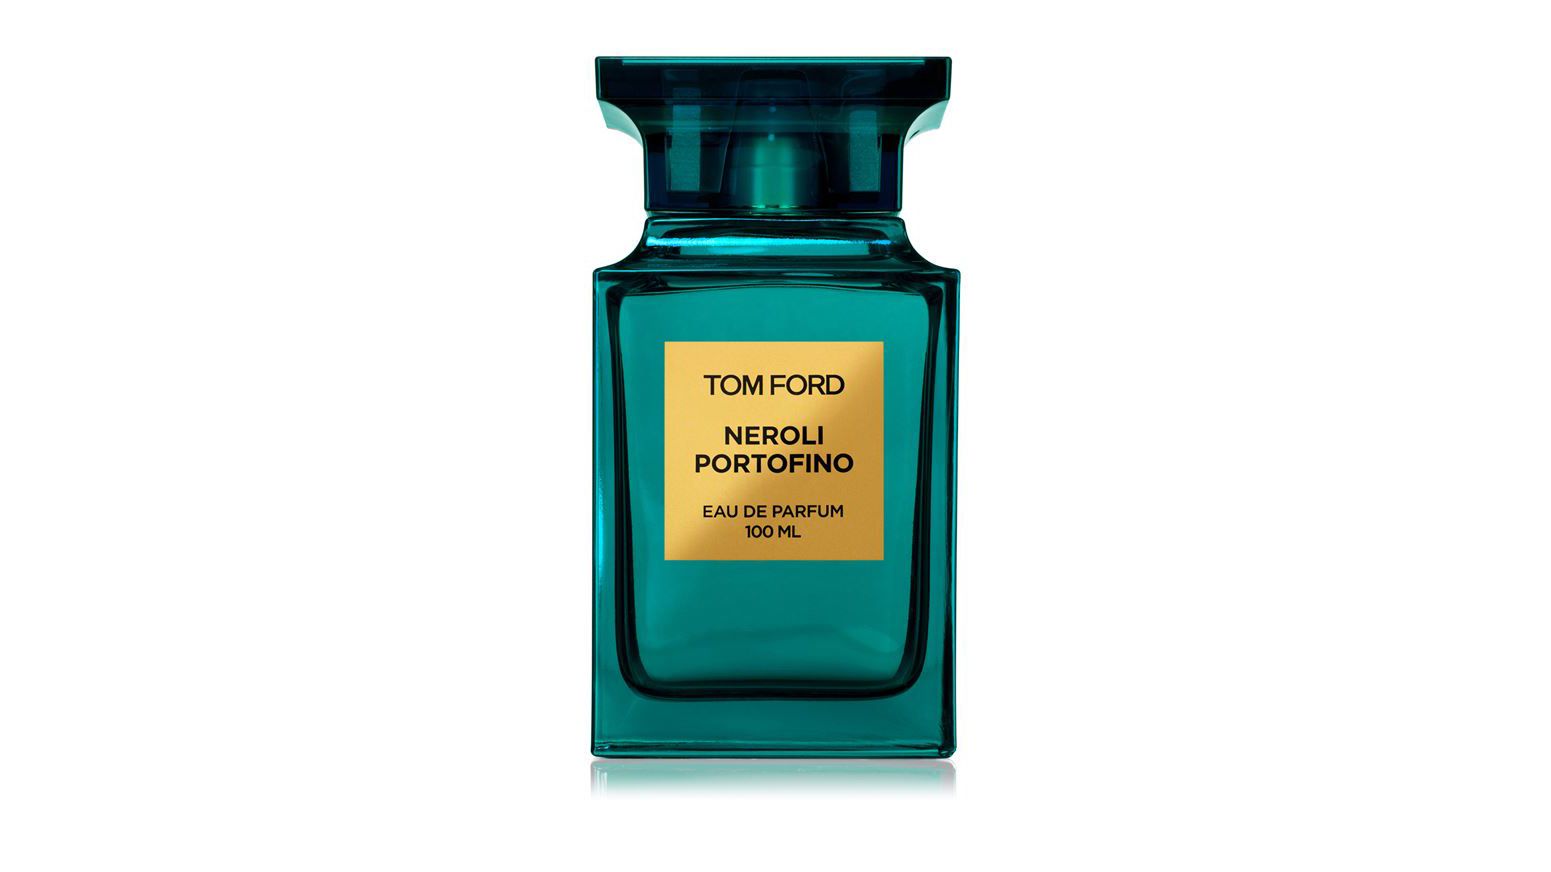 Geurstoffen voor beste mannen: Tom Ford Private Blend Neroli Portofino Eau de Parfum